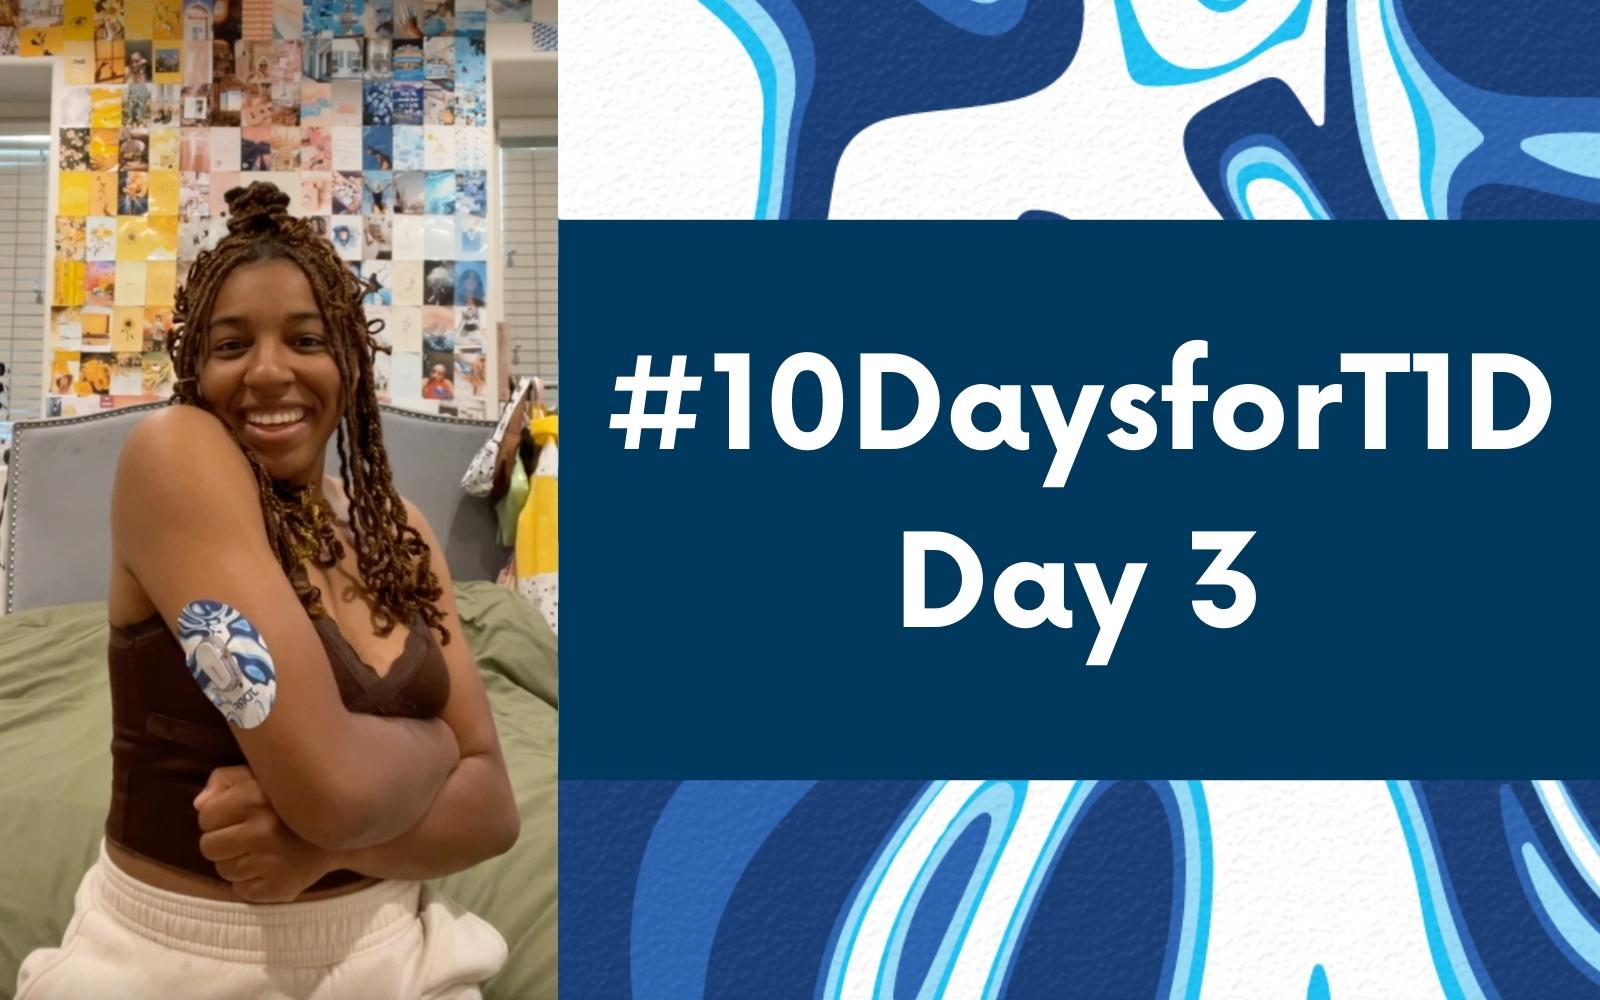 #10DaysforT1D Challenge Day 3